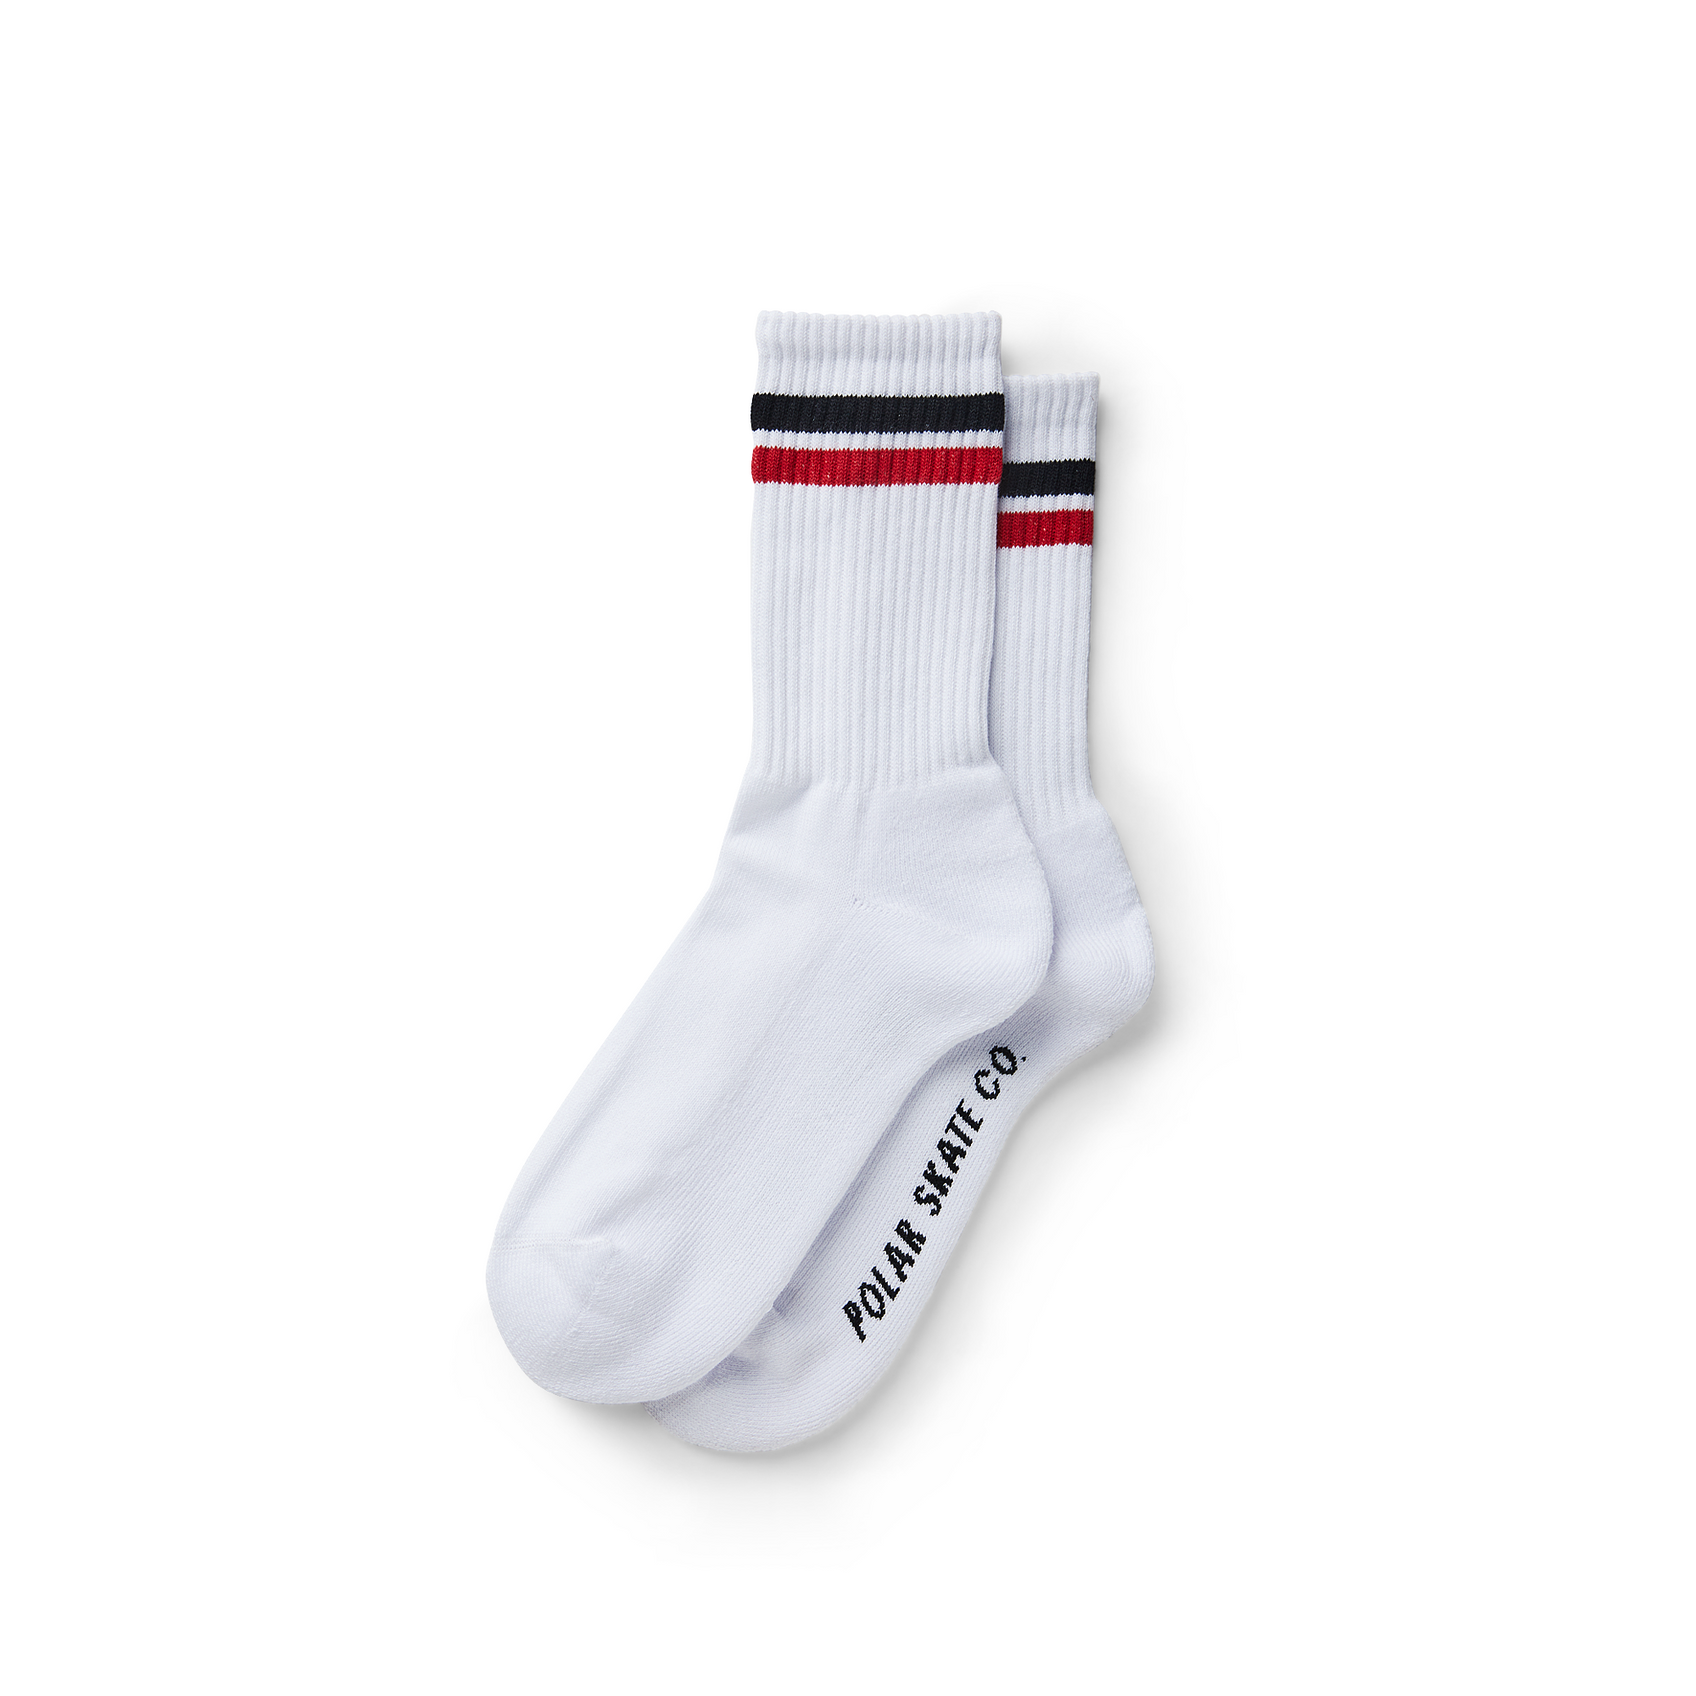 Polar Skate Co. Stripe Socks (White/Black/Red) - Apple Valley Emporium